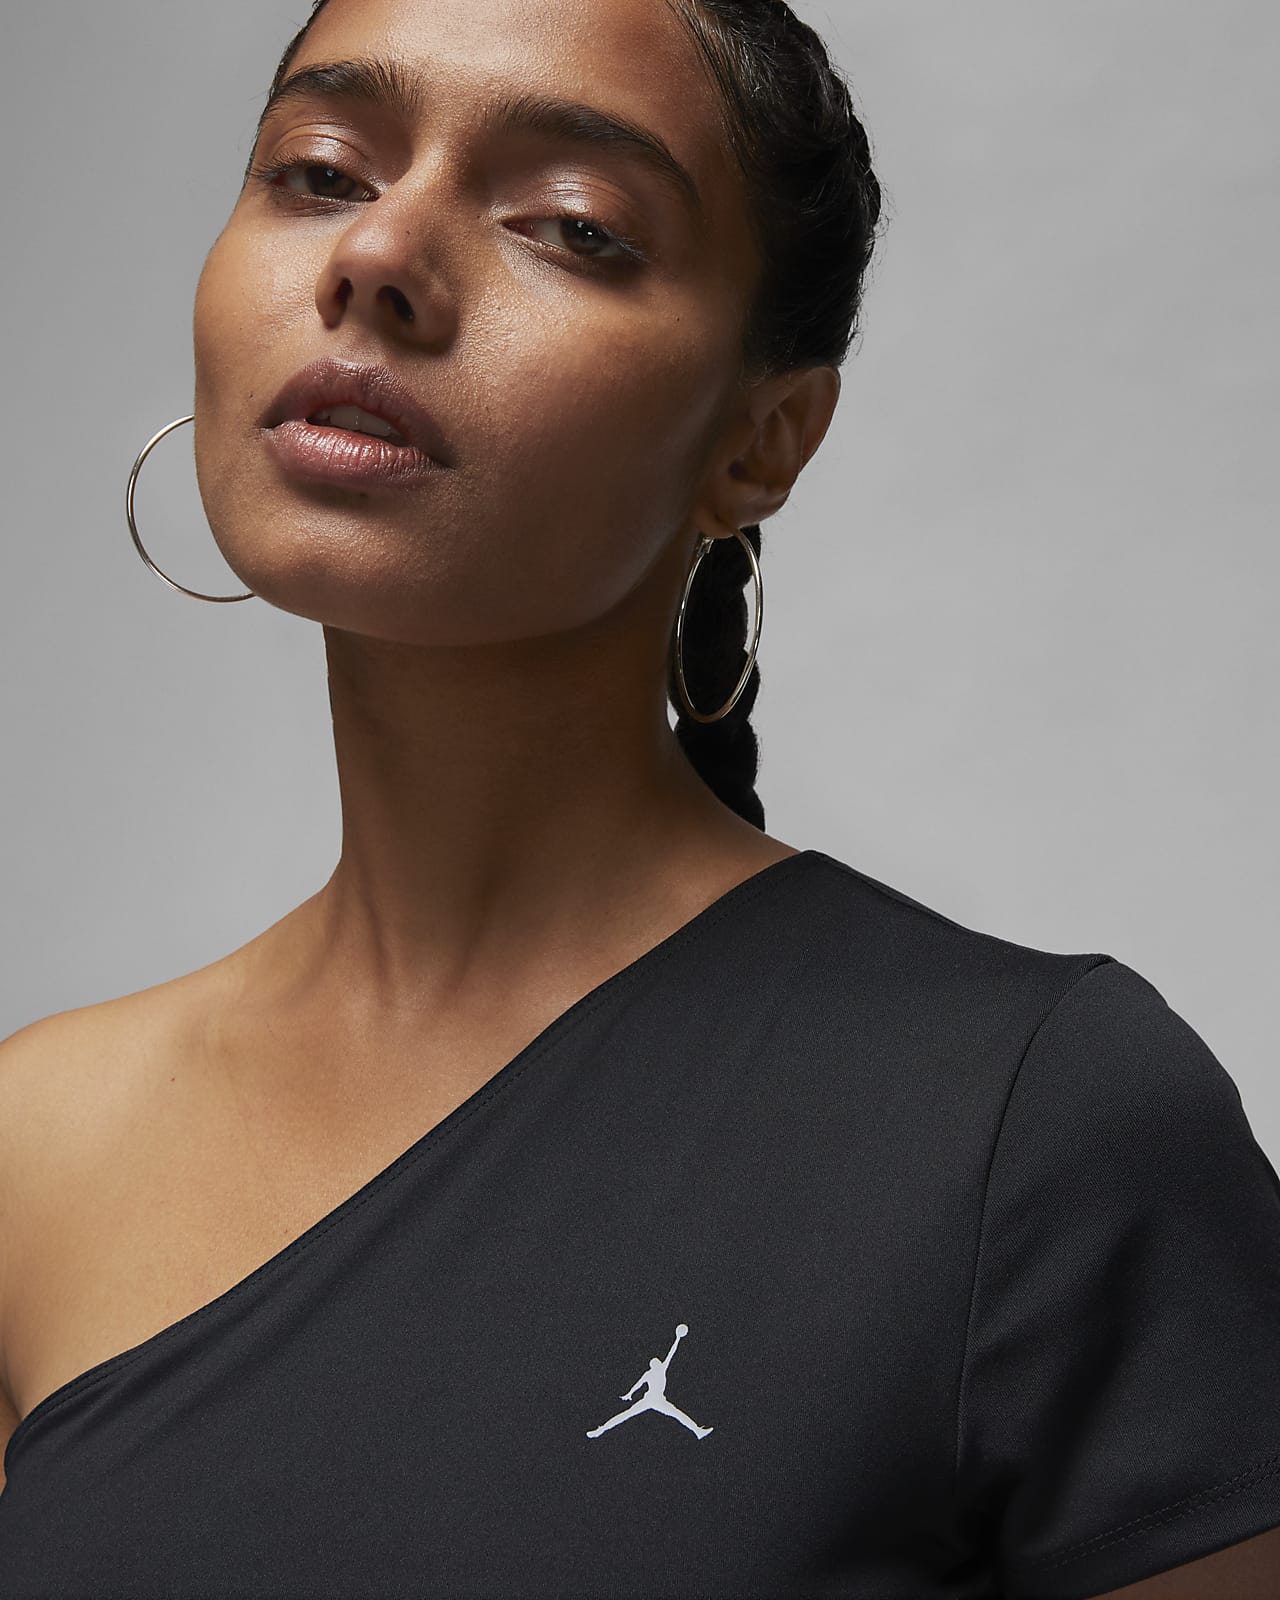 verliezen oase hoe vaak Jordan Sport Women's Asymmetrical Short-Sleeve Top. Nike LU